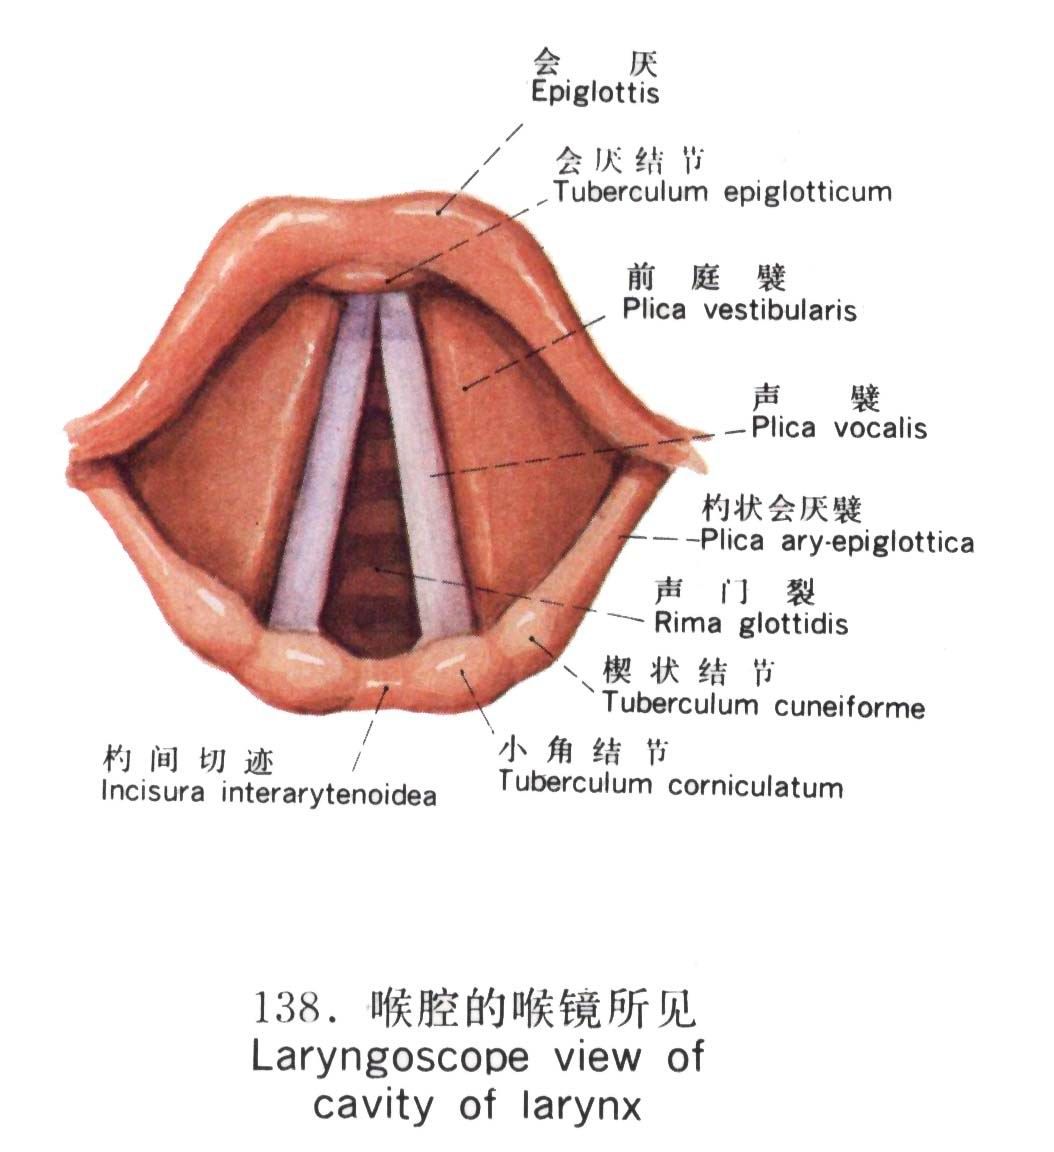 喉镜下声门解剖图图片